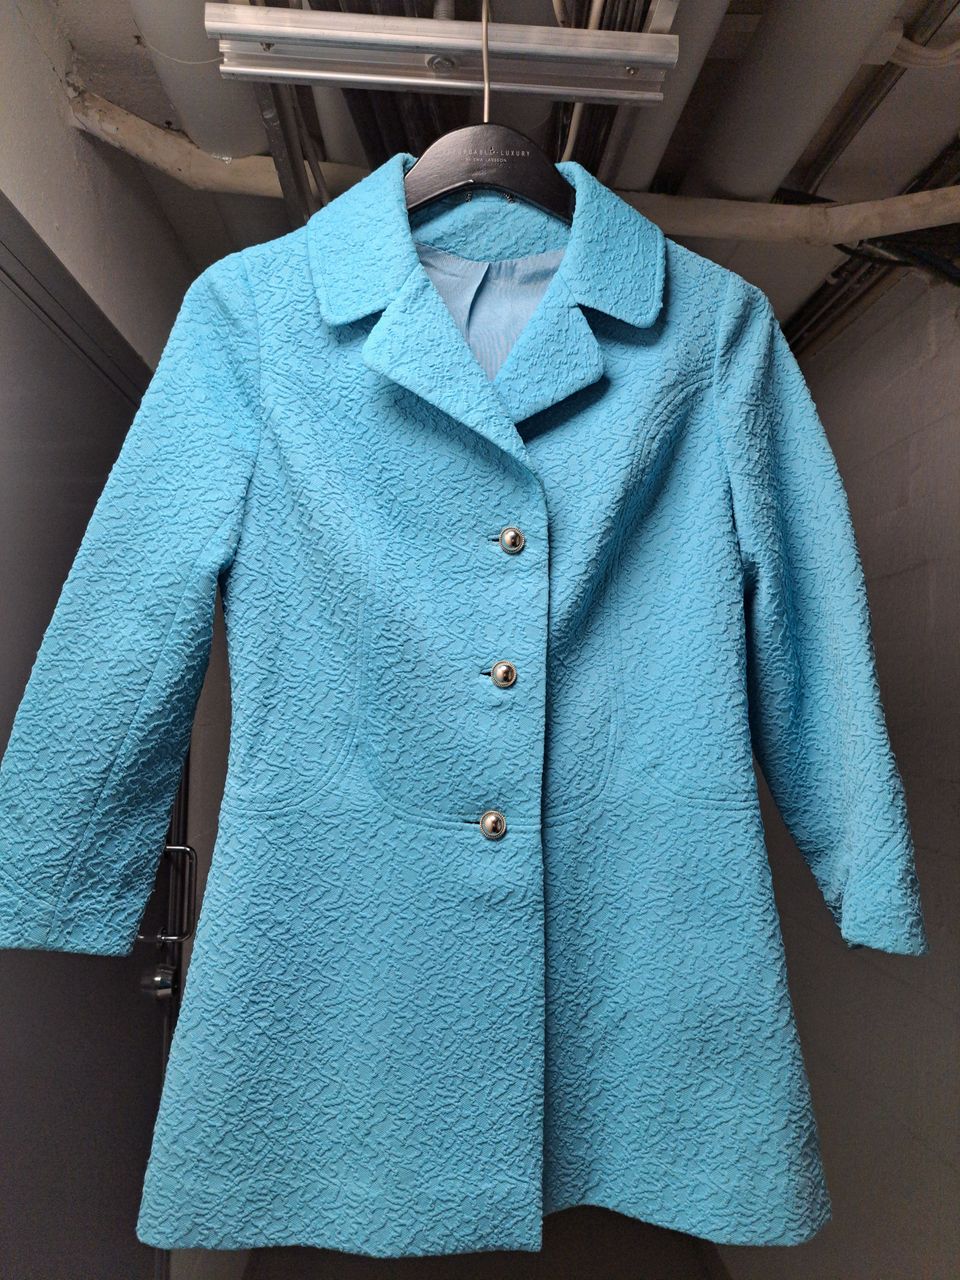 Vintage jakku